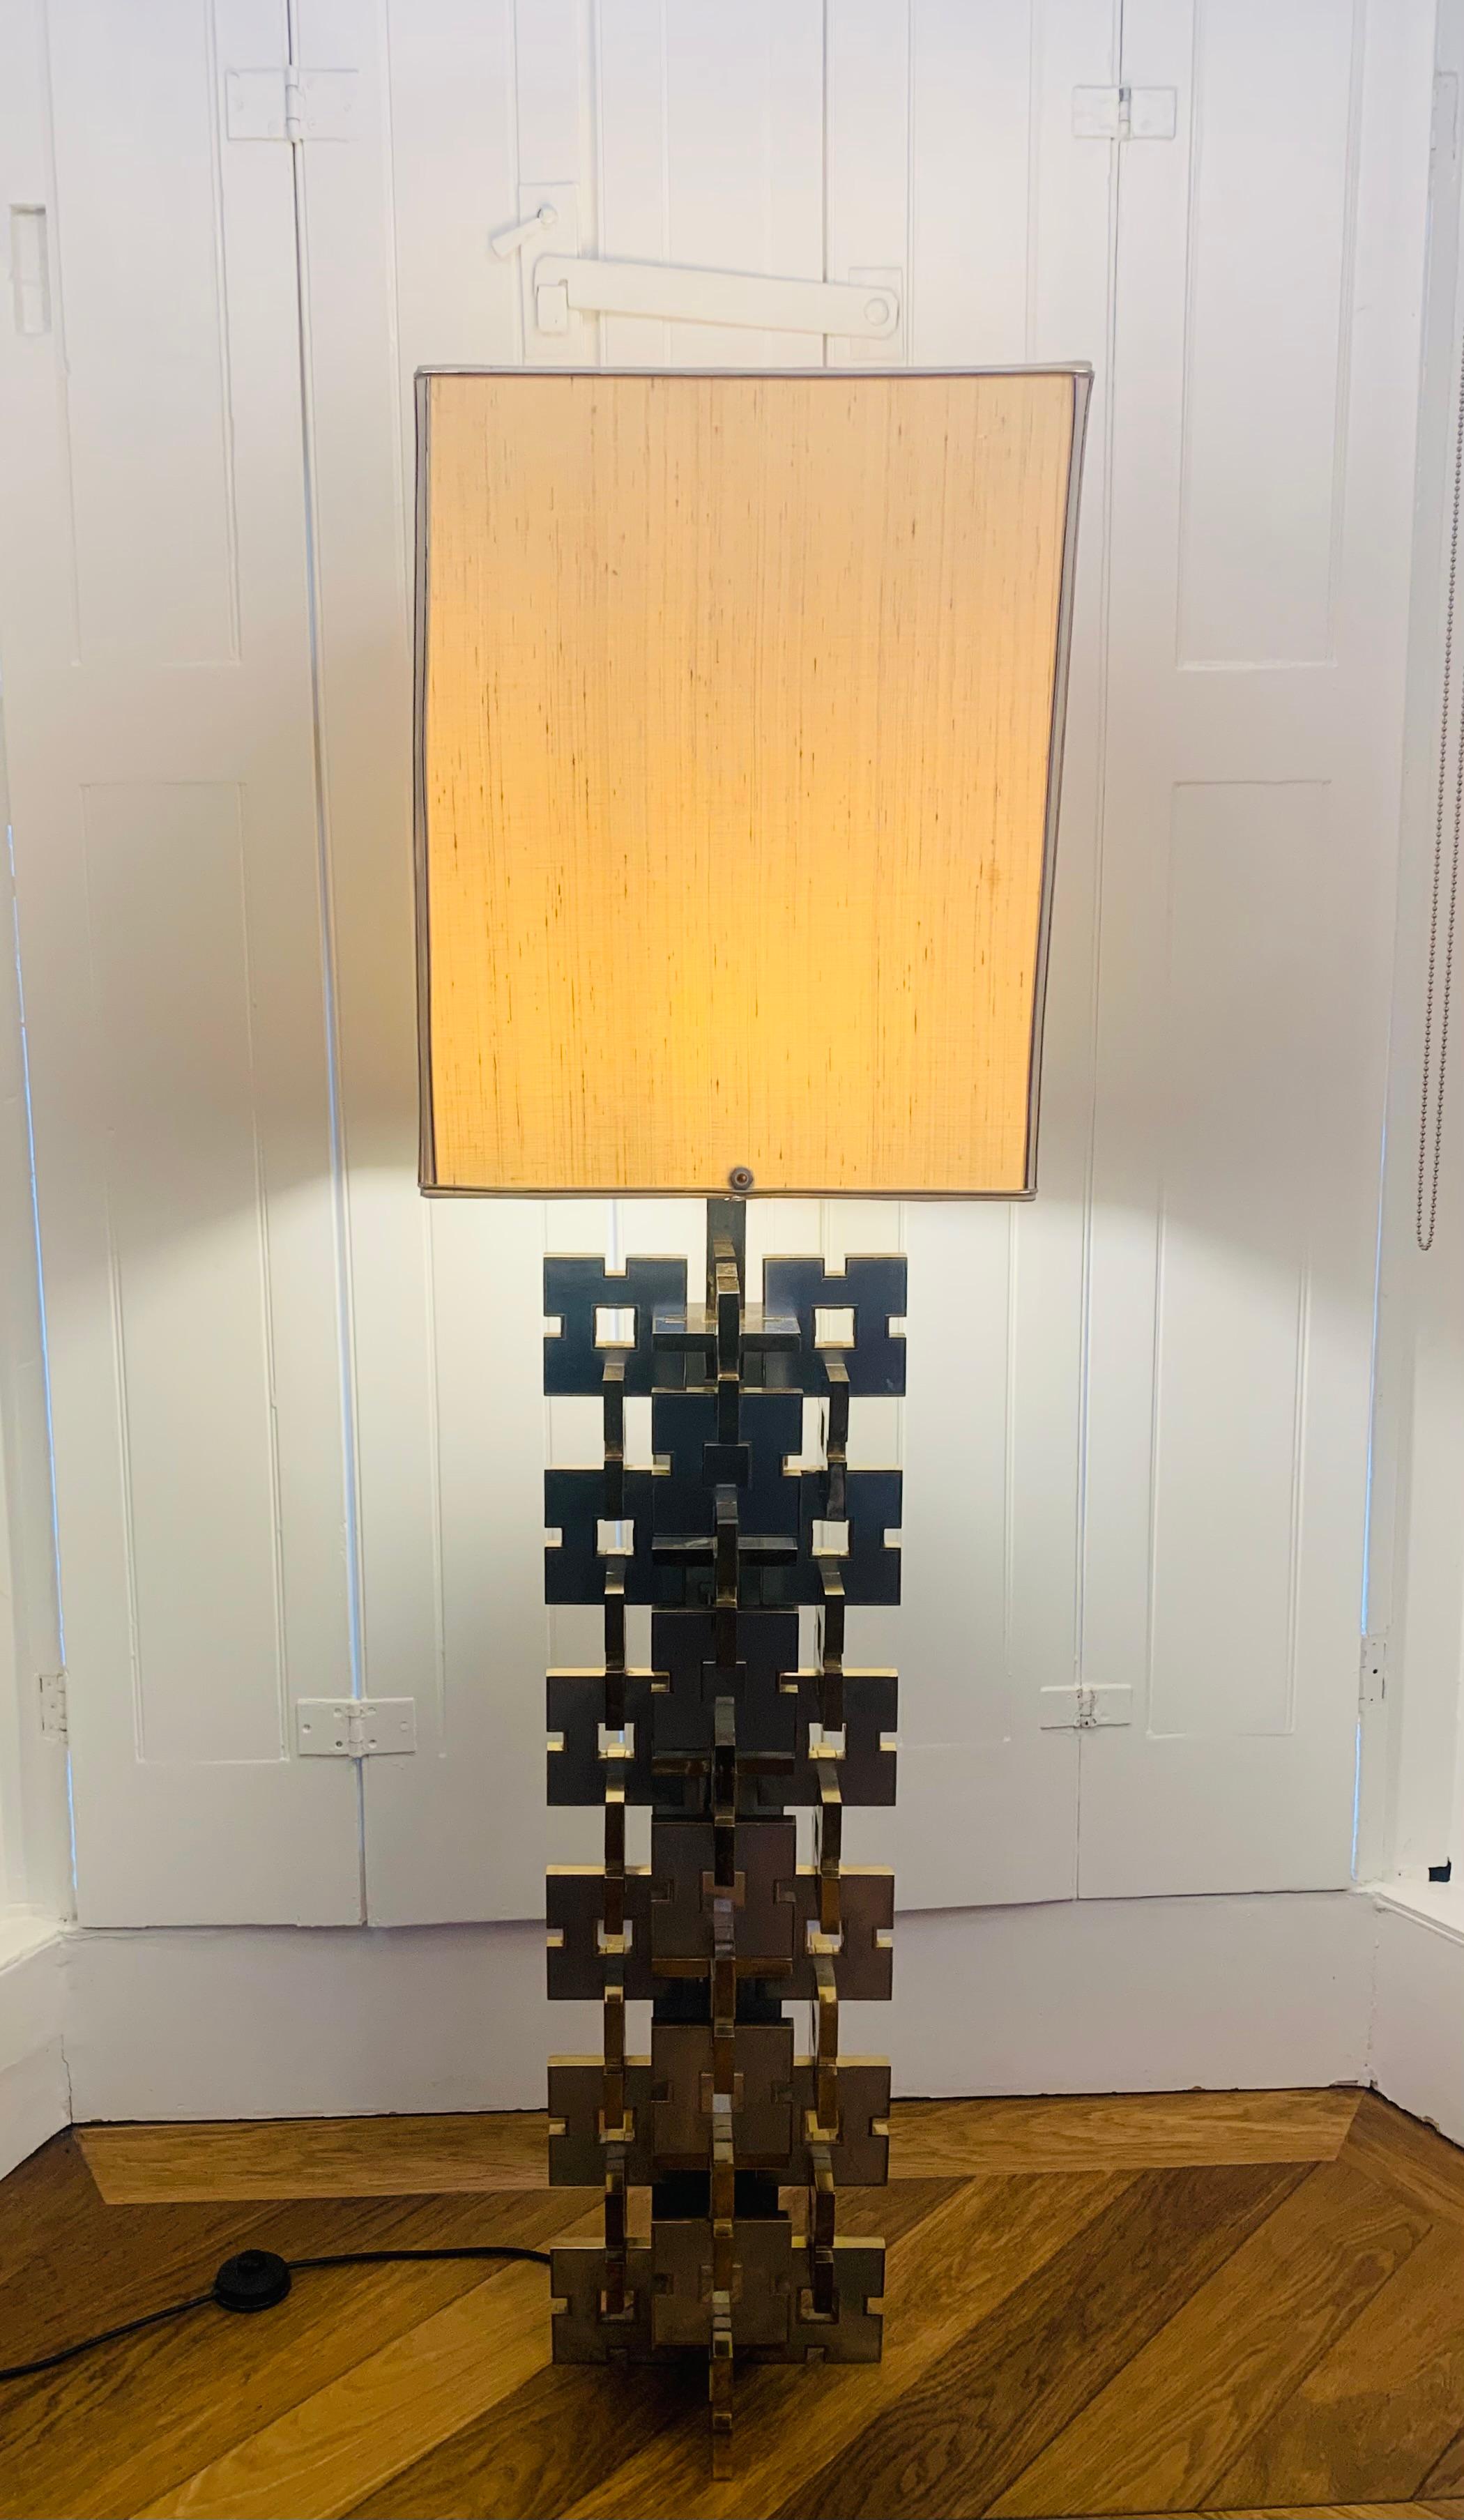 Un lampadaire italien rare, saisissant et magnifiquement conçu, construit à partir de carrés argentés alternés, imbriqués et identiques, avec des bords en laiton. Cette magnifique lampe a été conçue par Gaetano Sciolari pour Sciolari Lighting dans